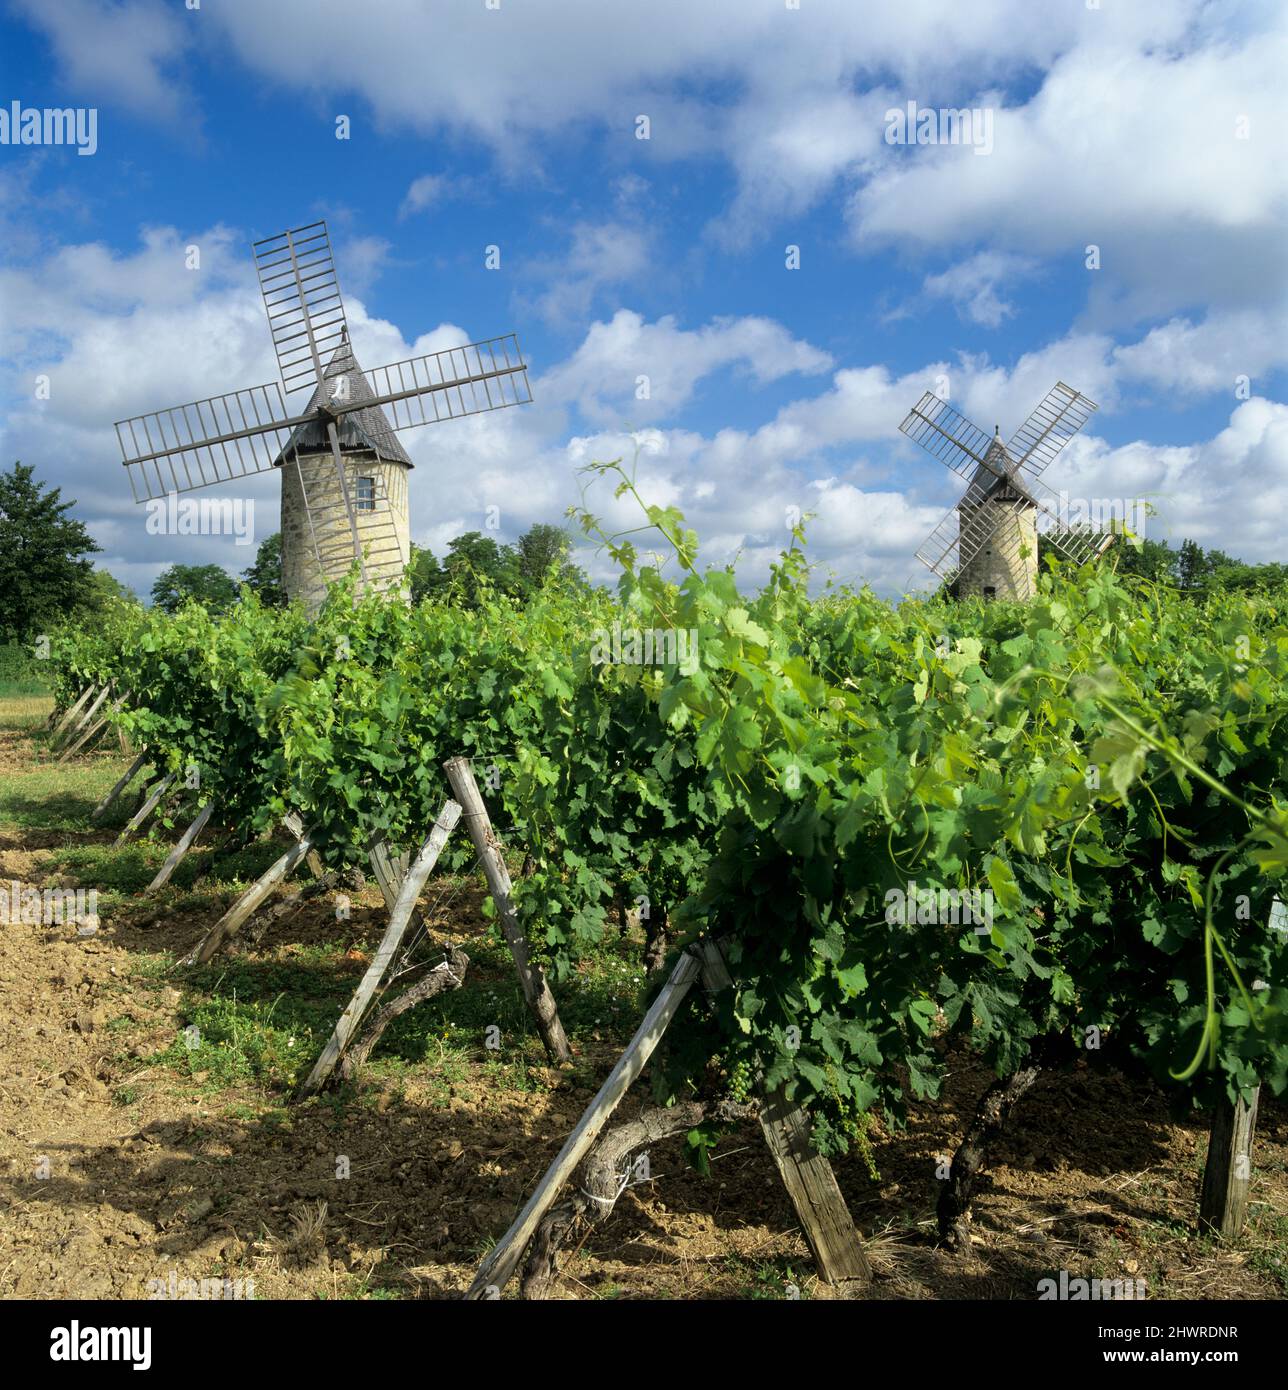 Windmills of Calon set in vineyard below a blue sky, Montagne, near Saint-Emilion, Nouvelle-Aquitaine, France, Europe Stock Photo